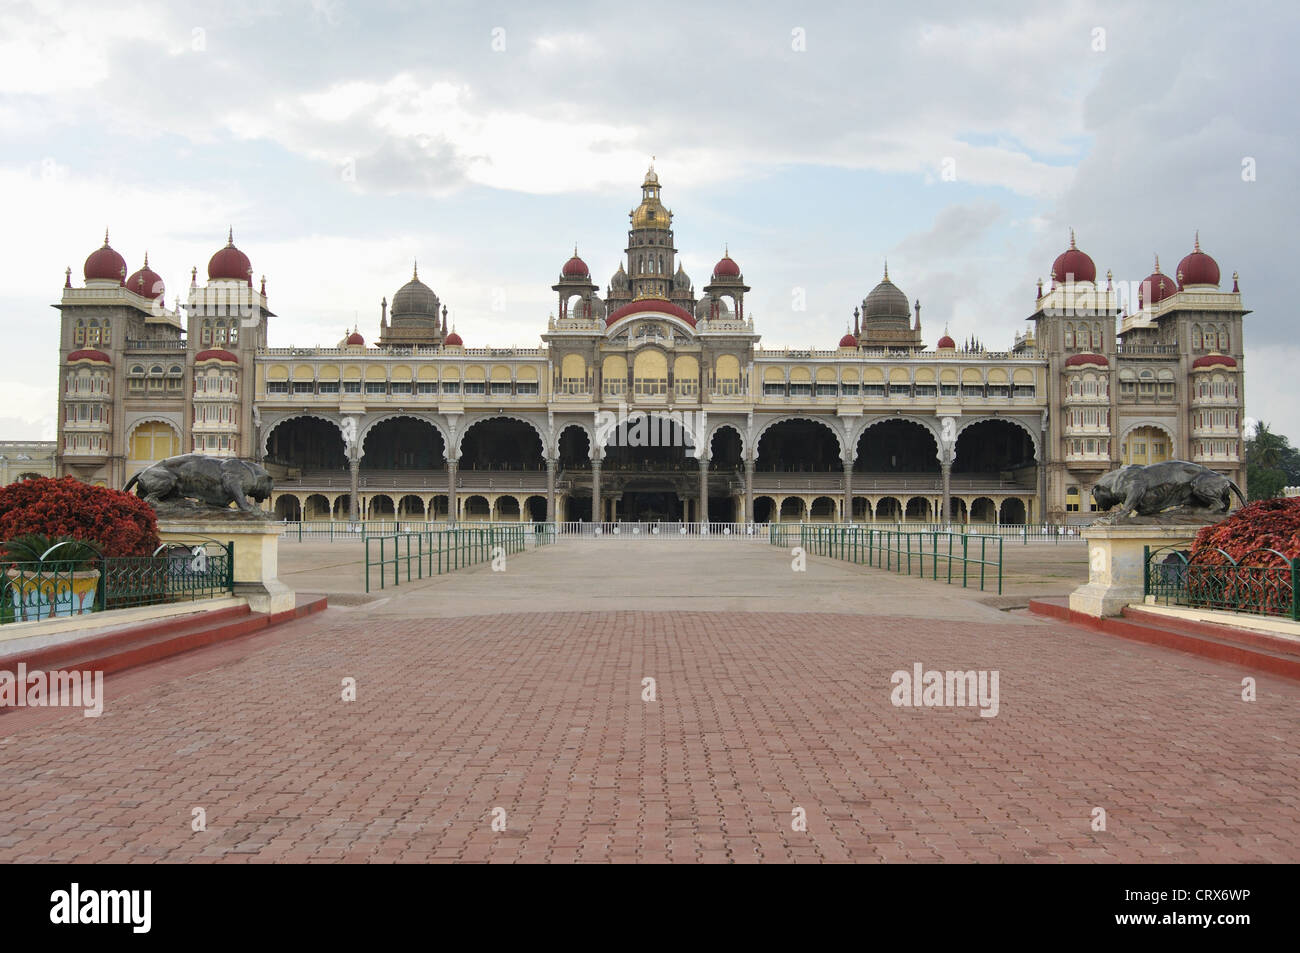 Der Palast von Mysore, Mysore, Karnataka Indien. Offizielle Residenz des die Wodeyars – Herrscher von Mysore Stockfoto